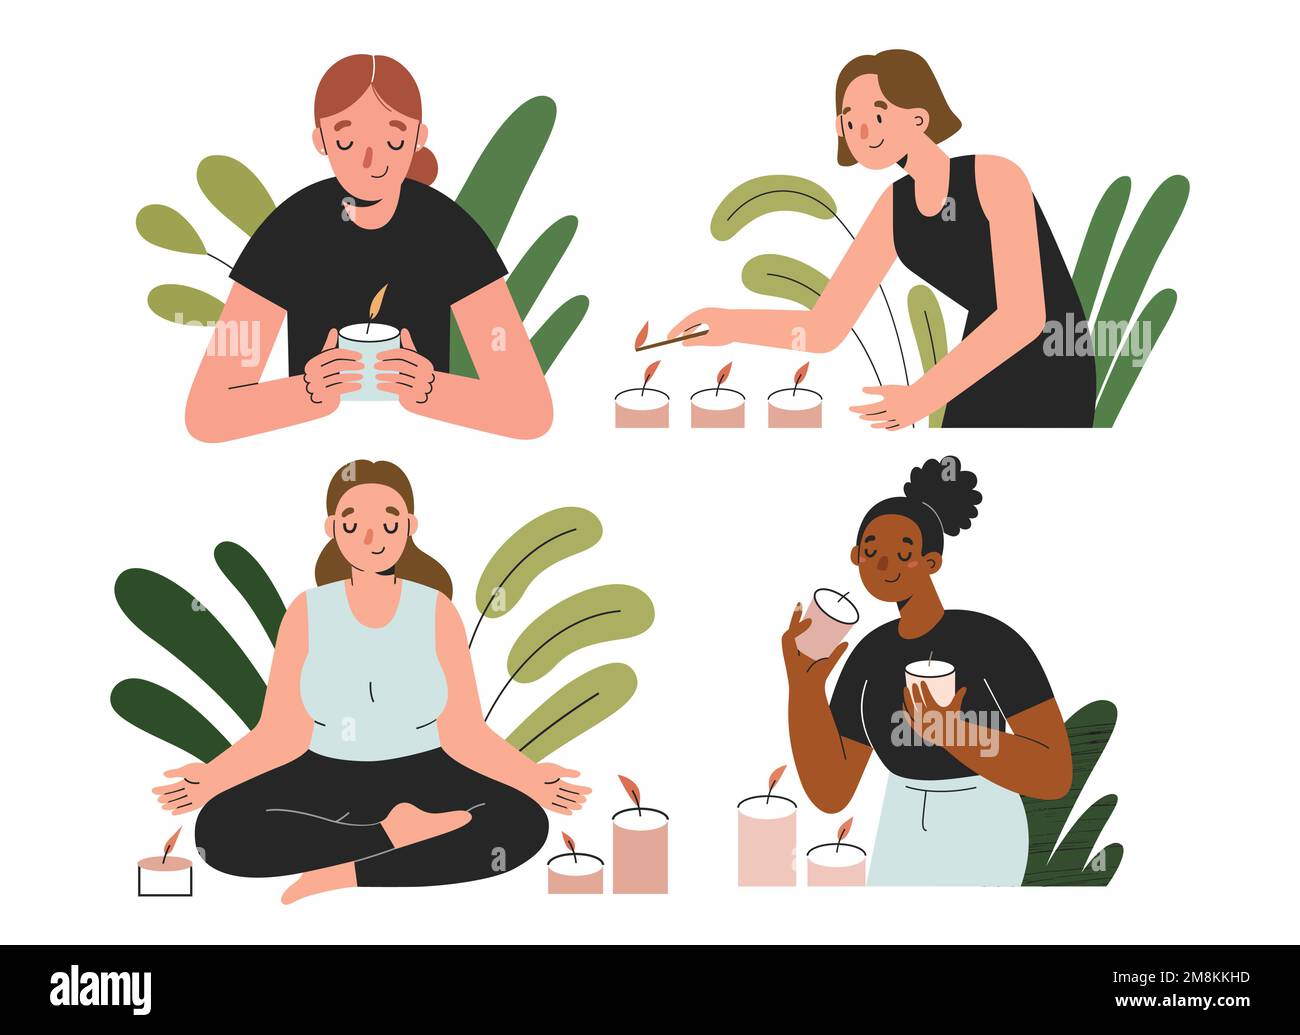 Le donne con candele profumate, le femmine odorano, illuminano candele profumate, meditano e fanno yoga, illustrazioni vettoriali Illustrazione Vettoriale